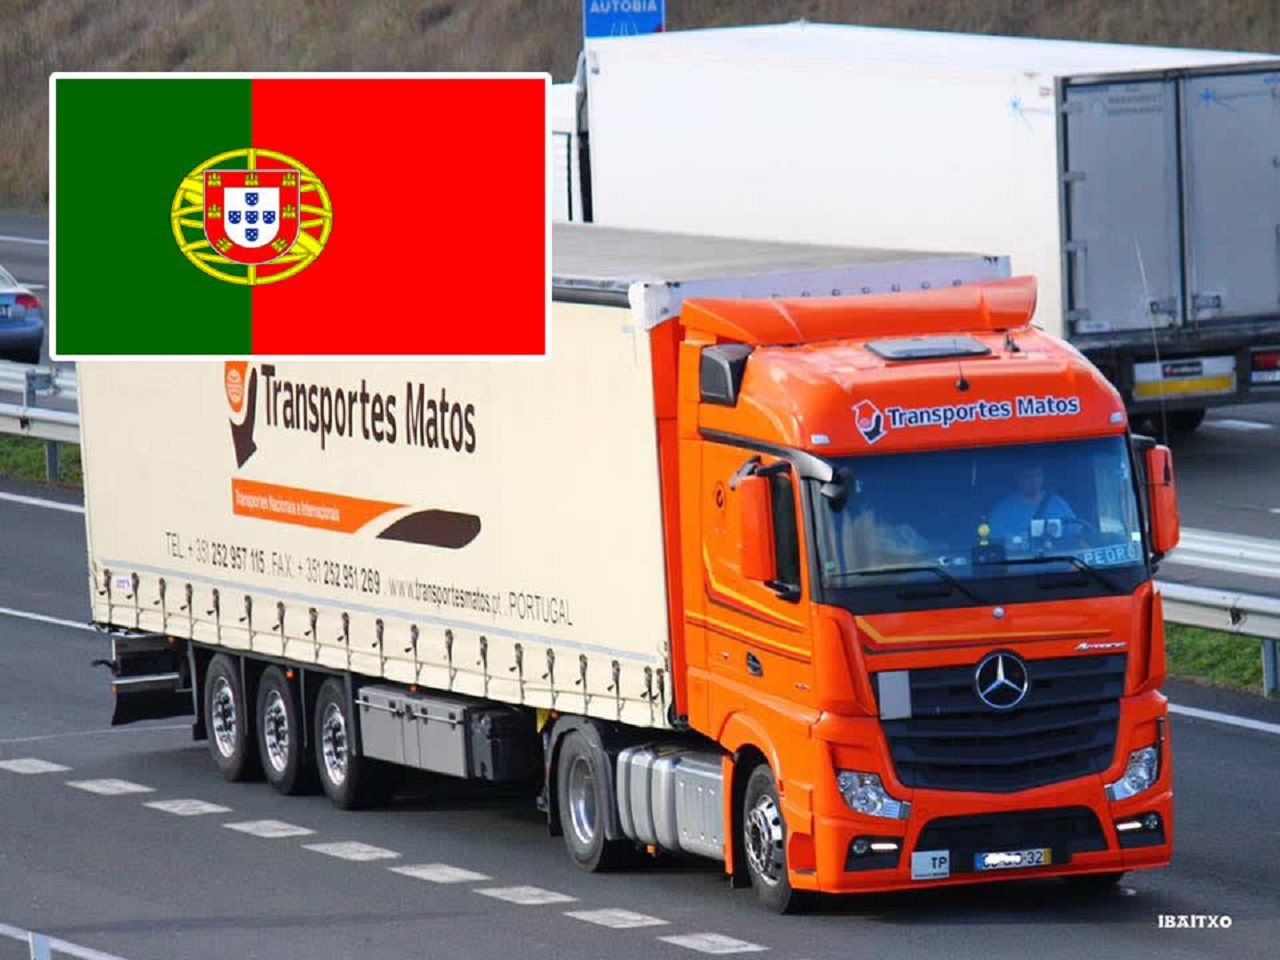 Quanto ganha um caminhoneiro em Portugal de acordo com sua categoria